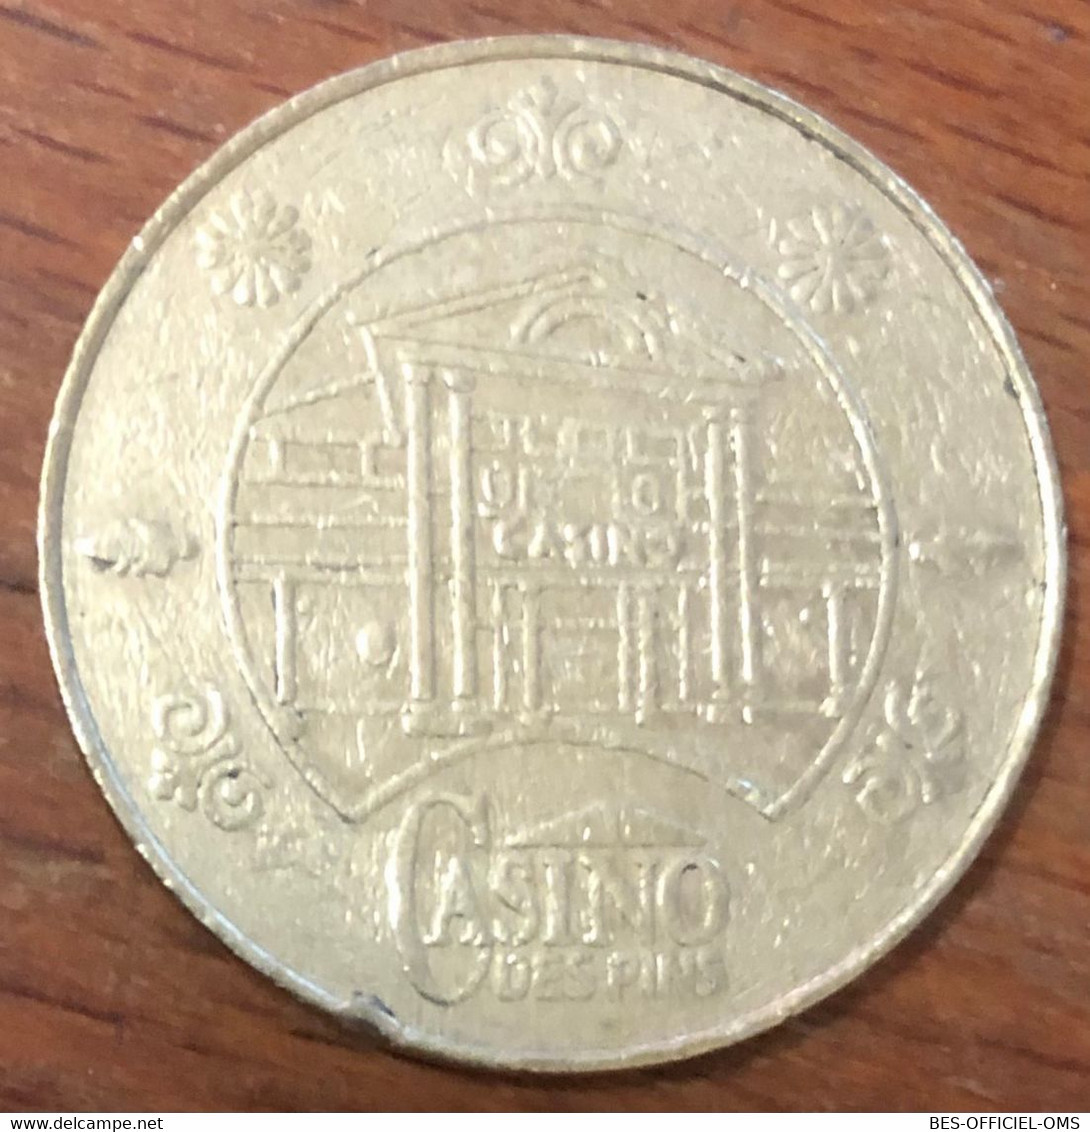 85 LES SABLES D'OLONNE CASINO DES PINS JETON DE 1 EURO SLOT MACHINE EN MÉTAL CHIP COINS TOKENS - Casino